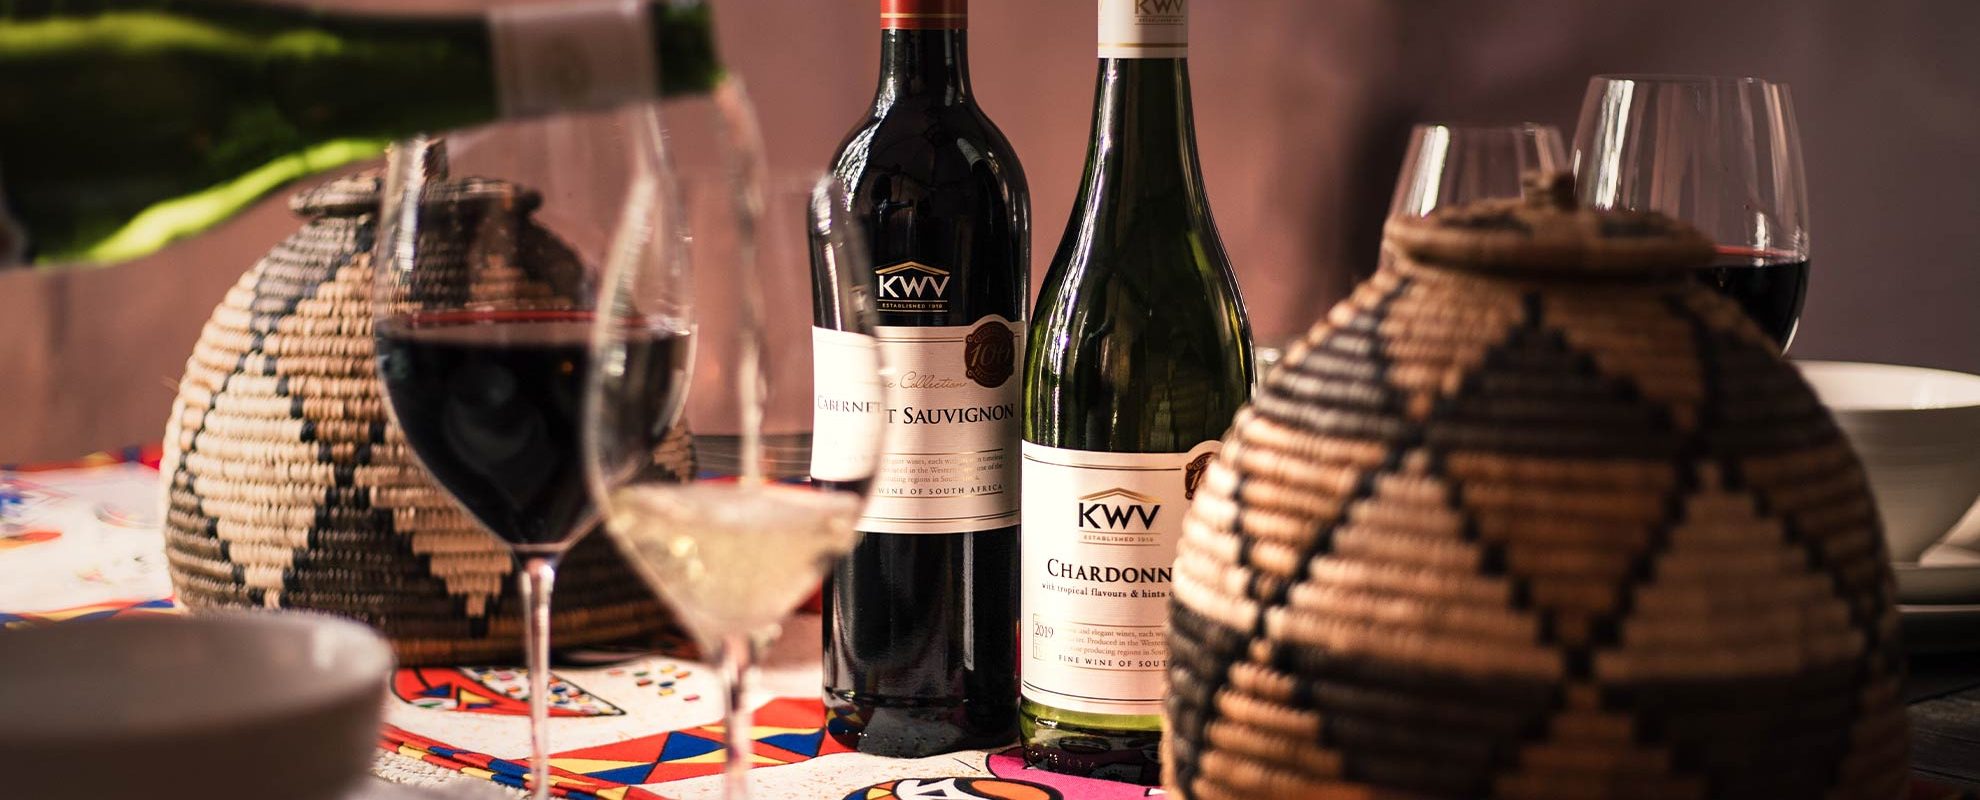 KWV Classic Collection, etelä-afrikan viinit